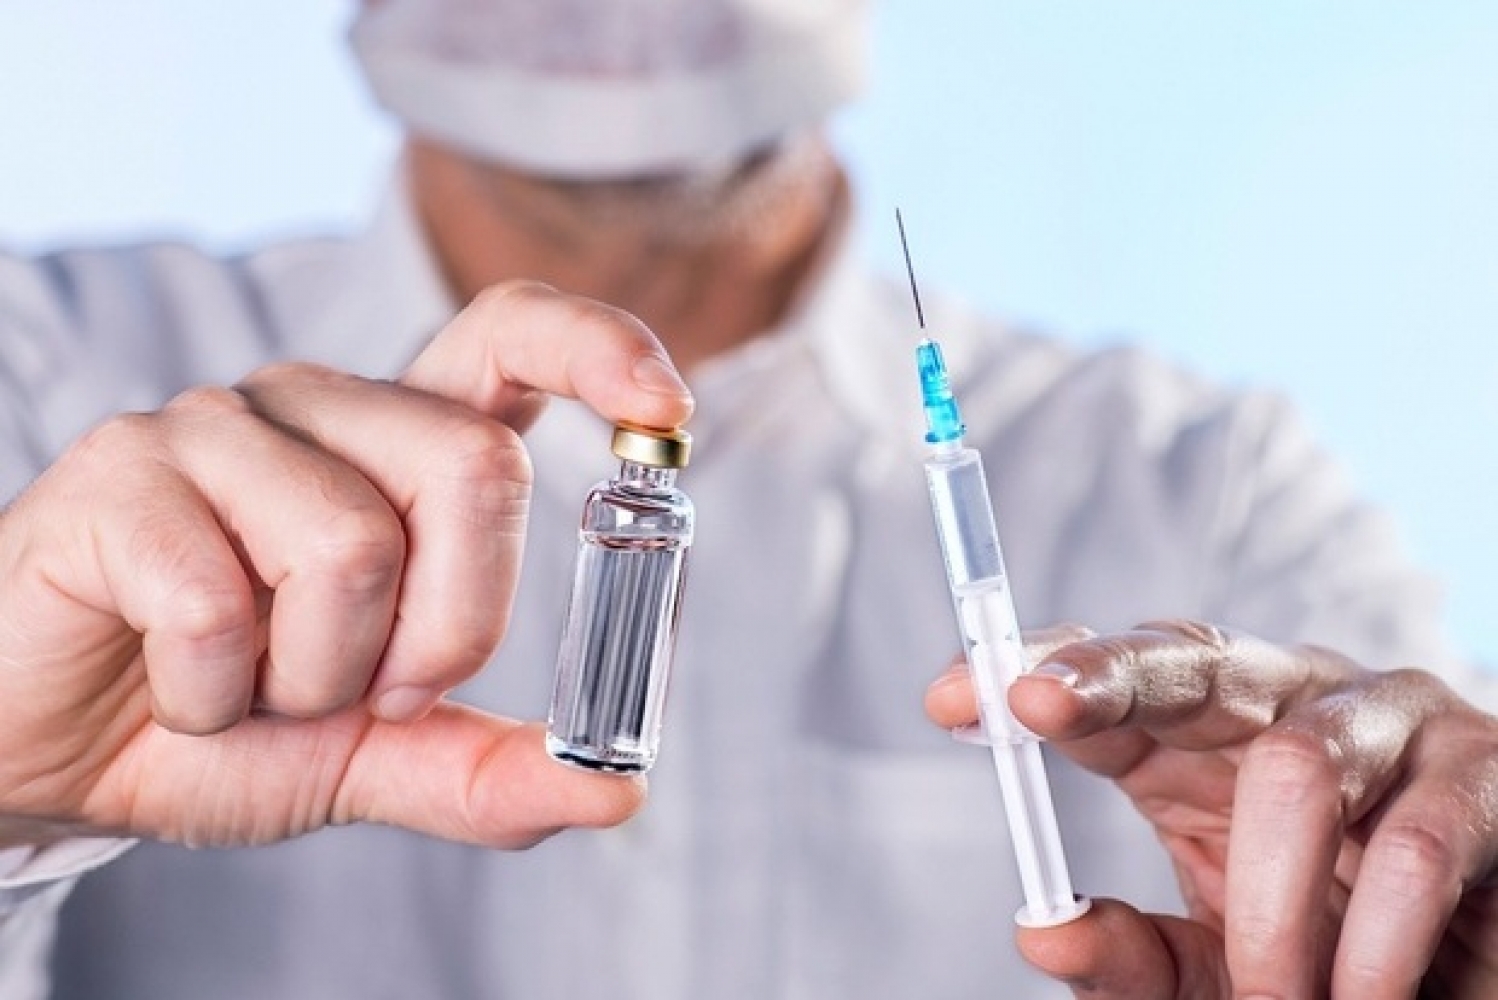 Қазақстанда бір тәулікте вакцинаның ІІ дозасын 15,5 мың адам алды